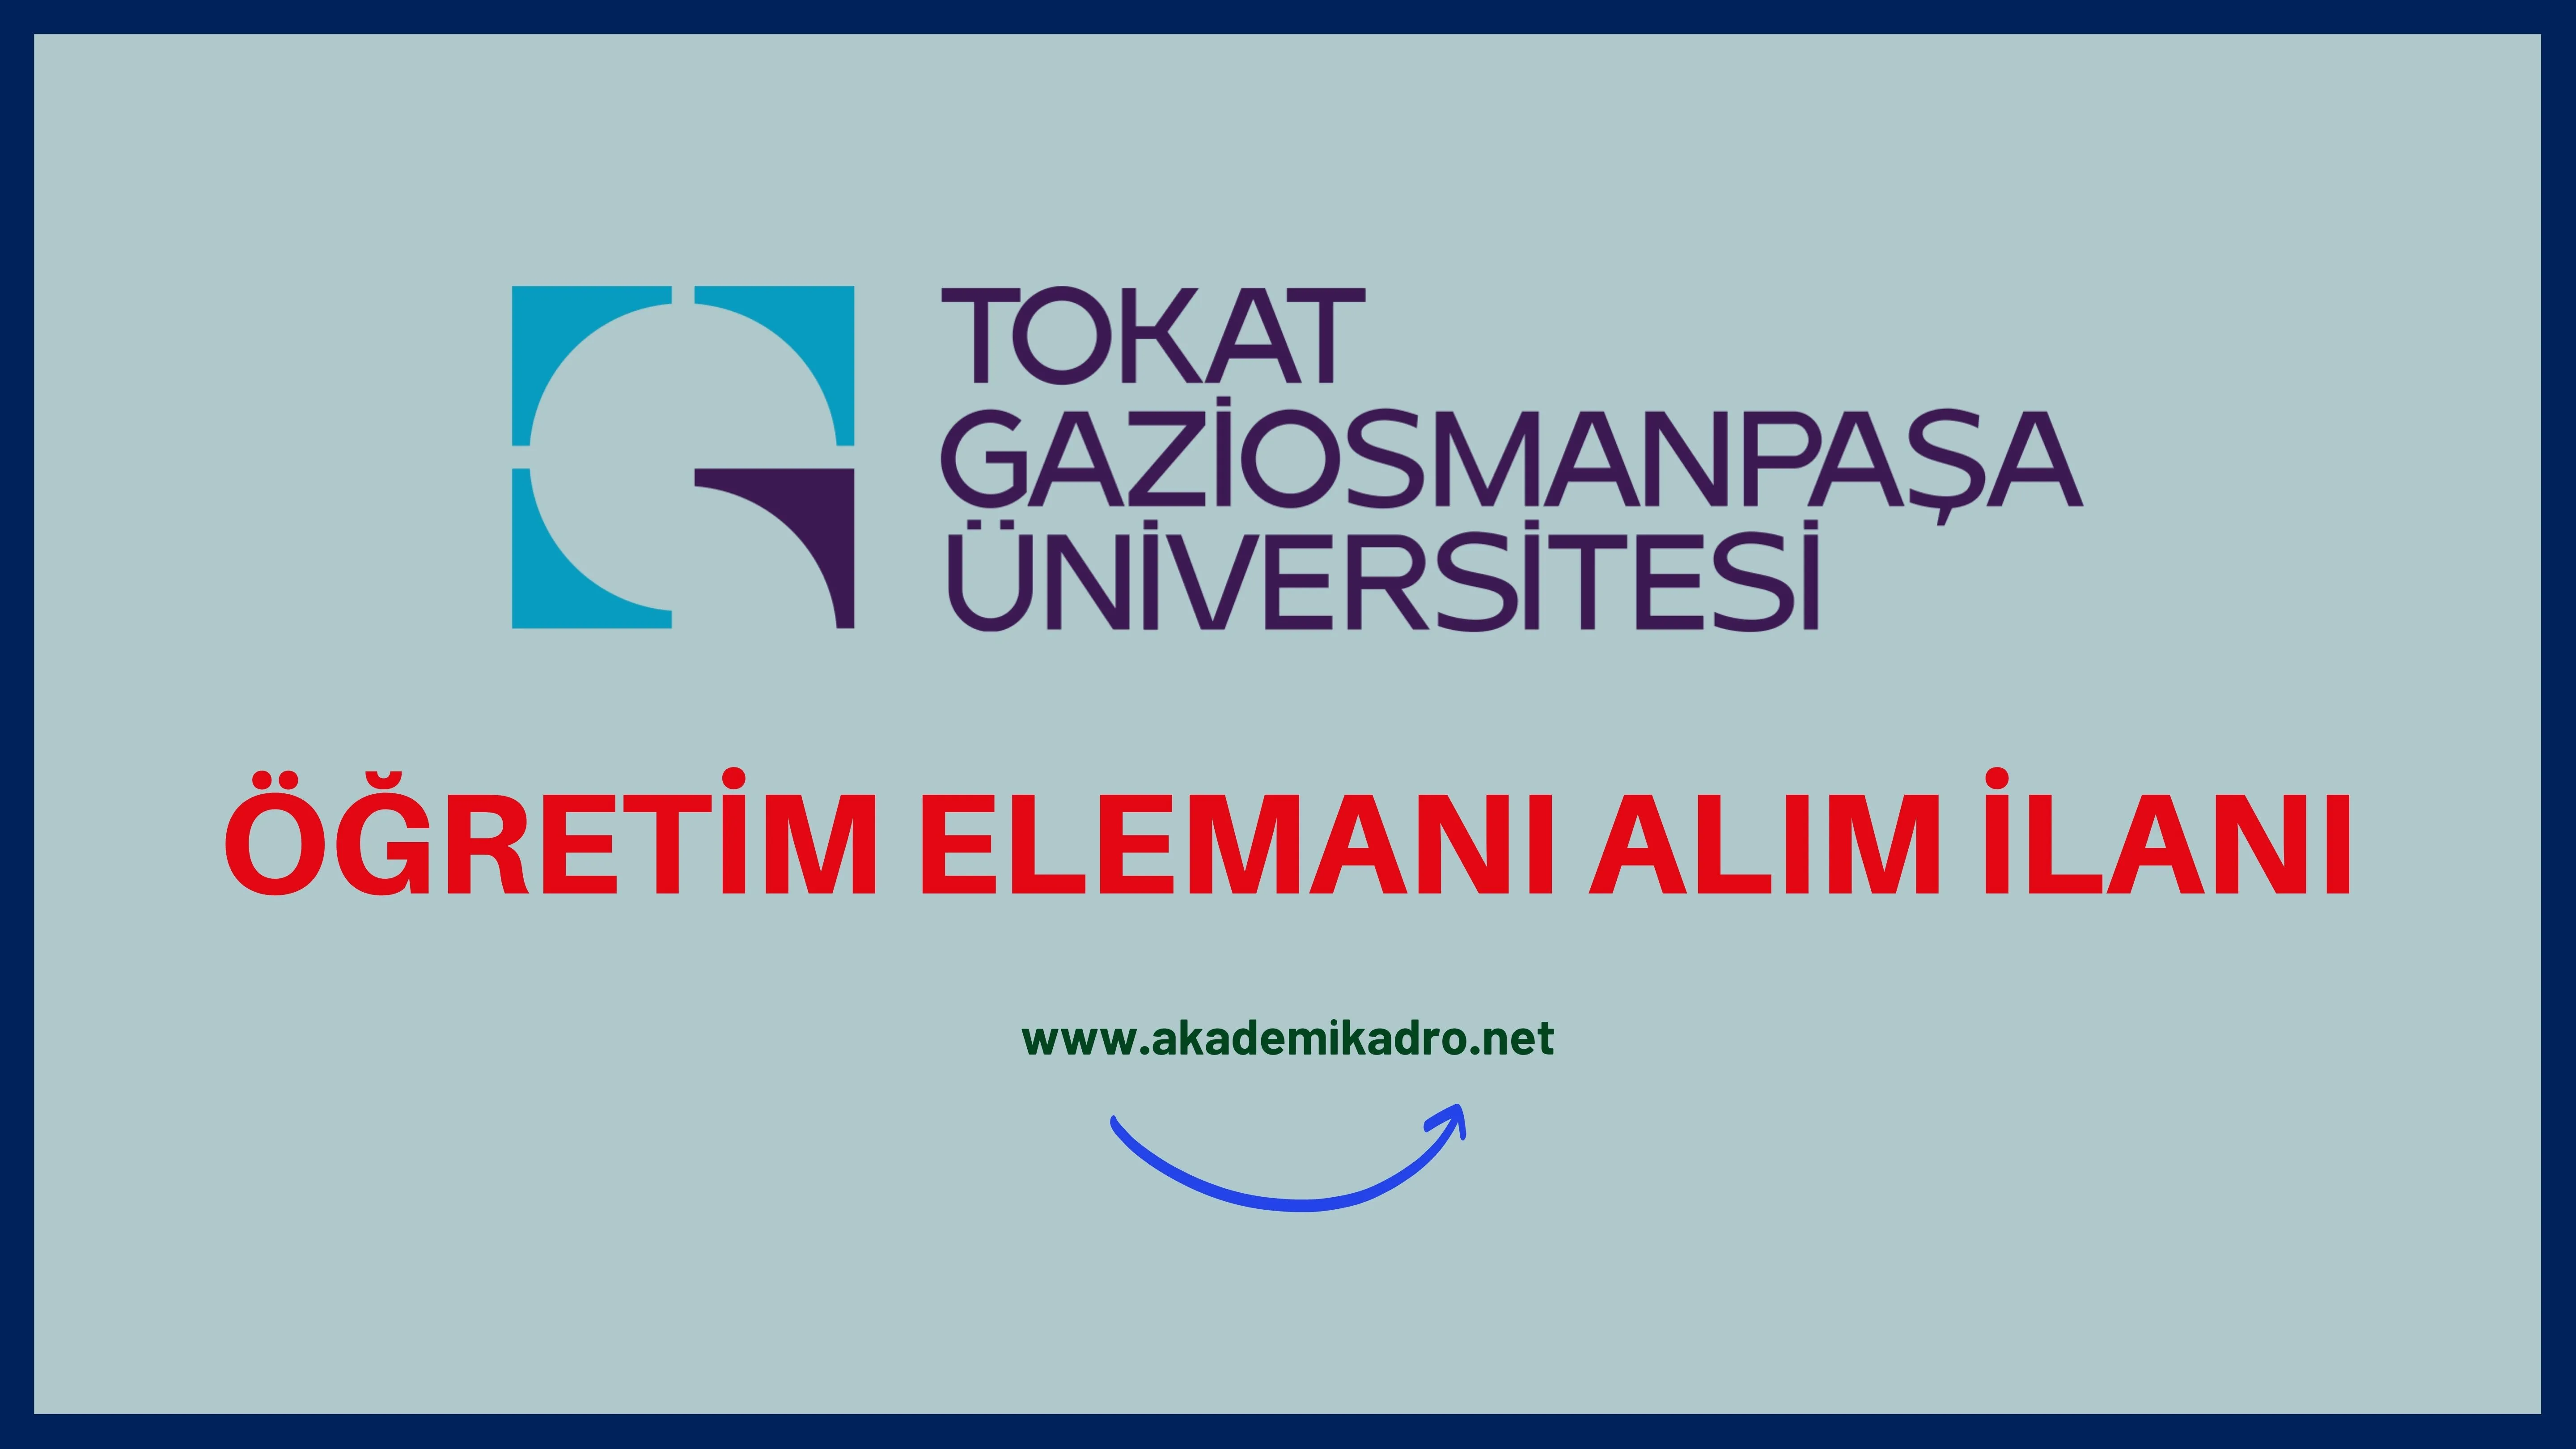 Tokat Gaziosmanpaşa Üniversitesi 23 Öğretim üyesi ve 6 Öğretim Görevlisi alacaktır.